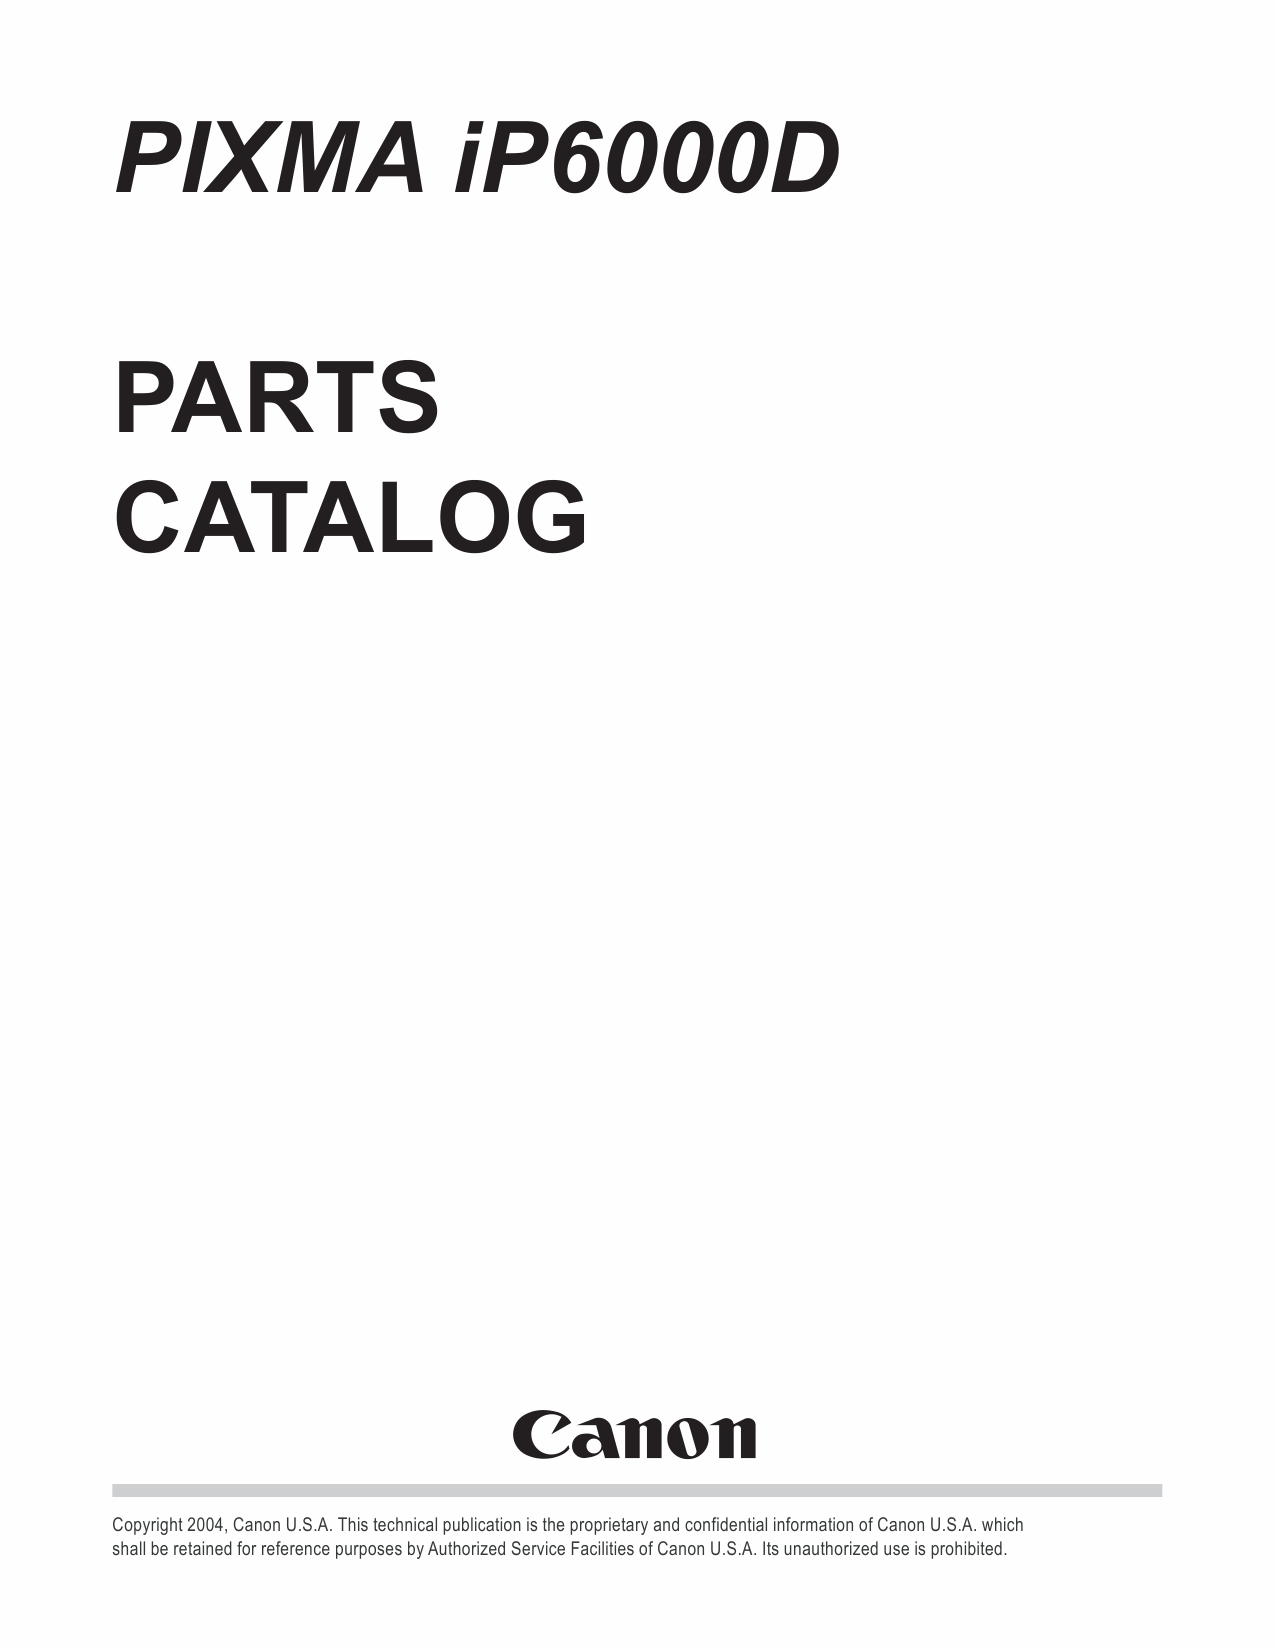 Canon PIXMA iP6000D Parts Catalog Manual-1